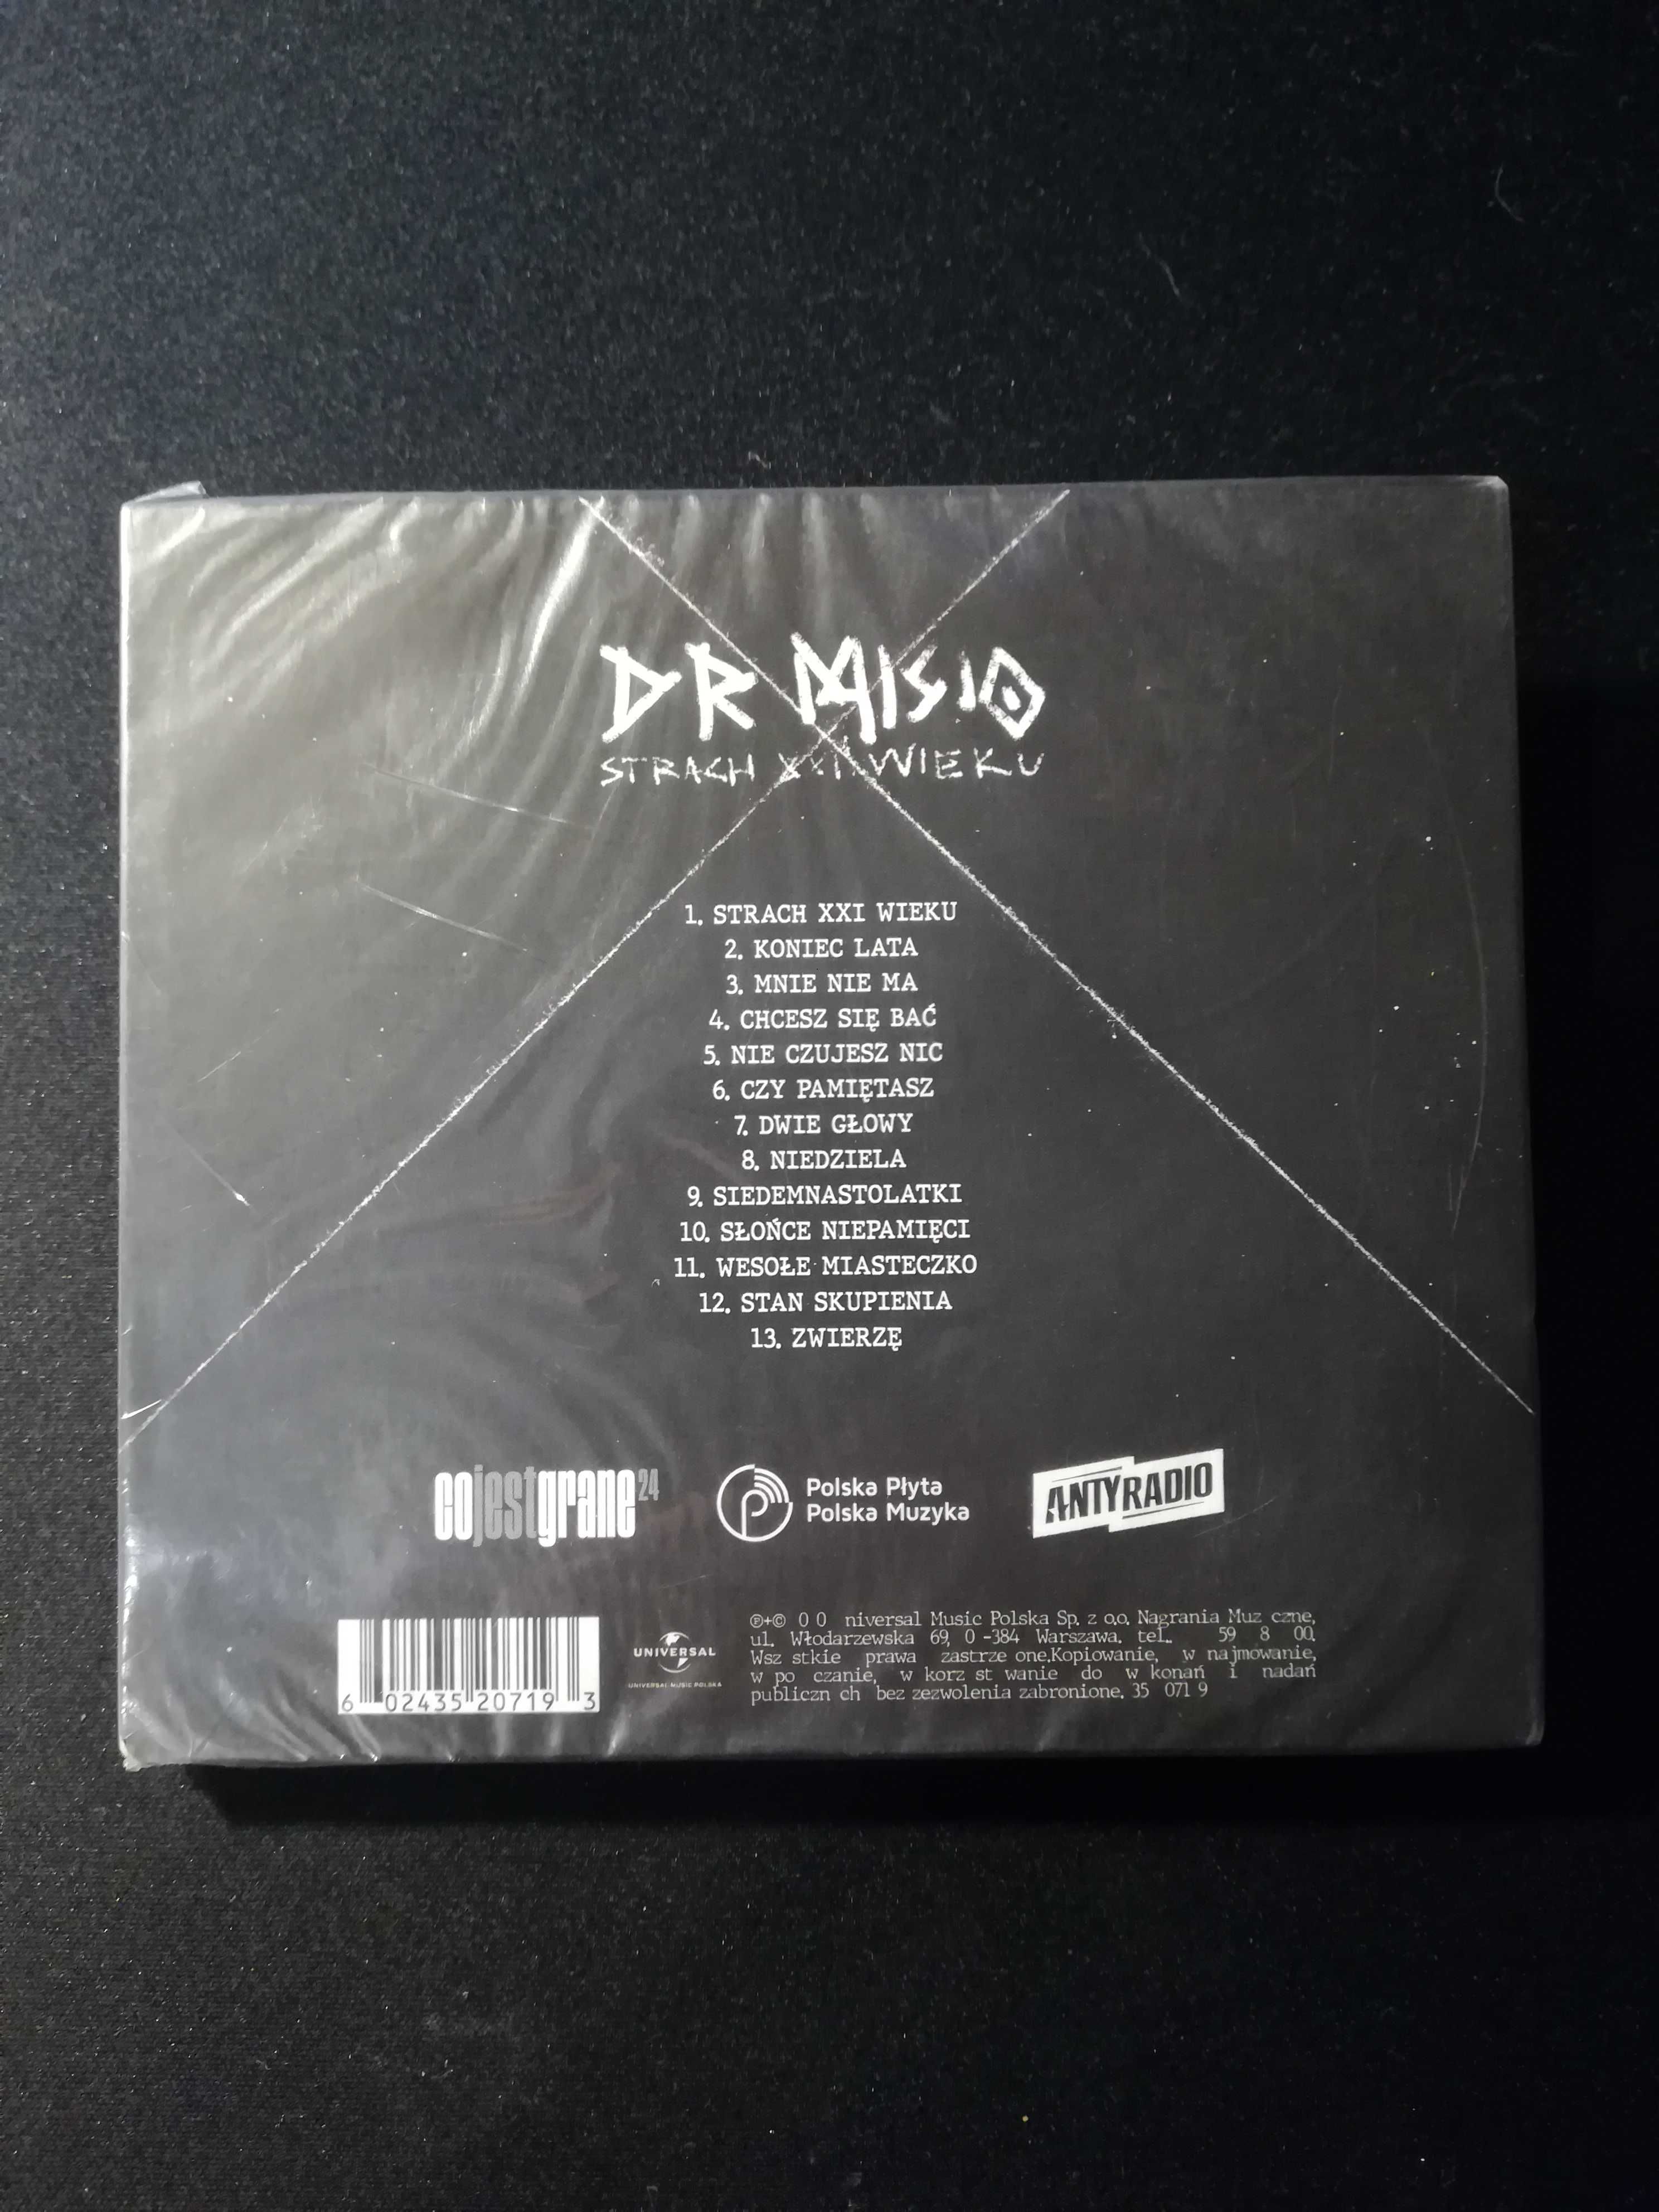 Dr Misio Strach XXl Wieku Płyta CD nowa w folii